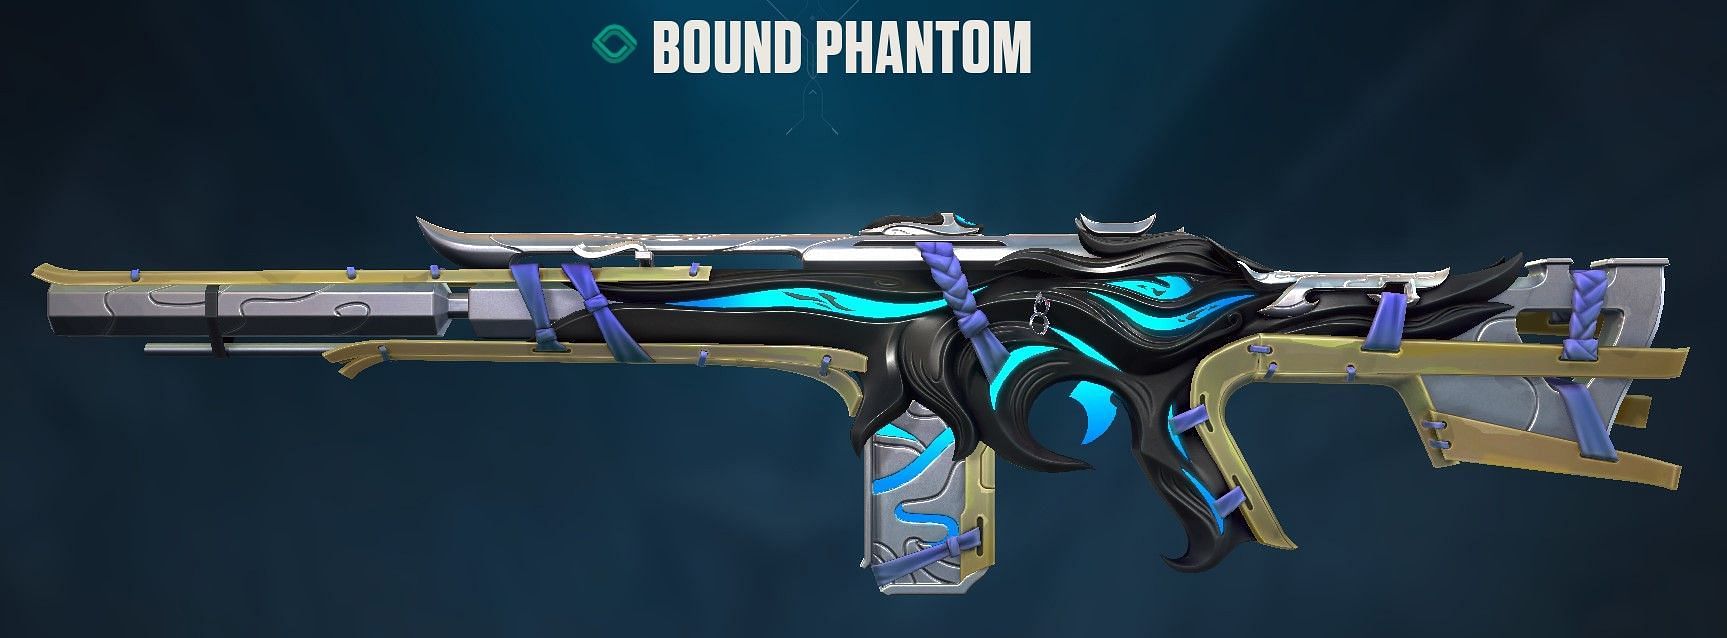 Bound Phantom (Image via Riot Games)